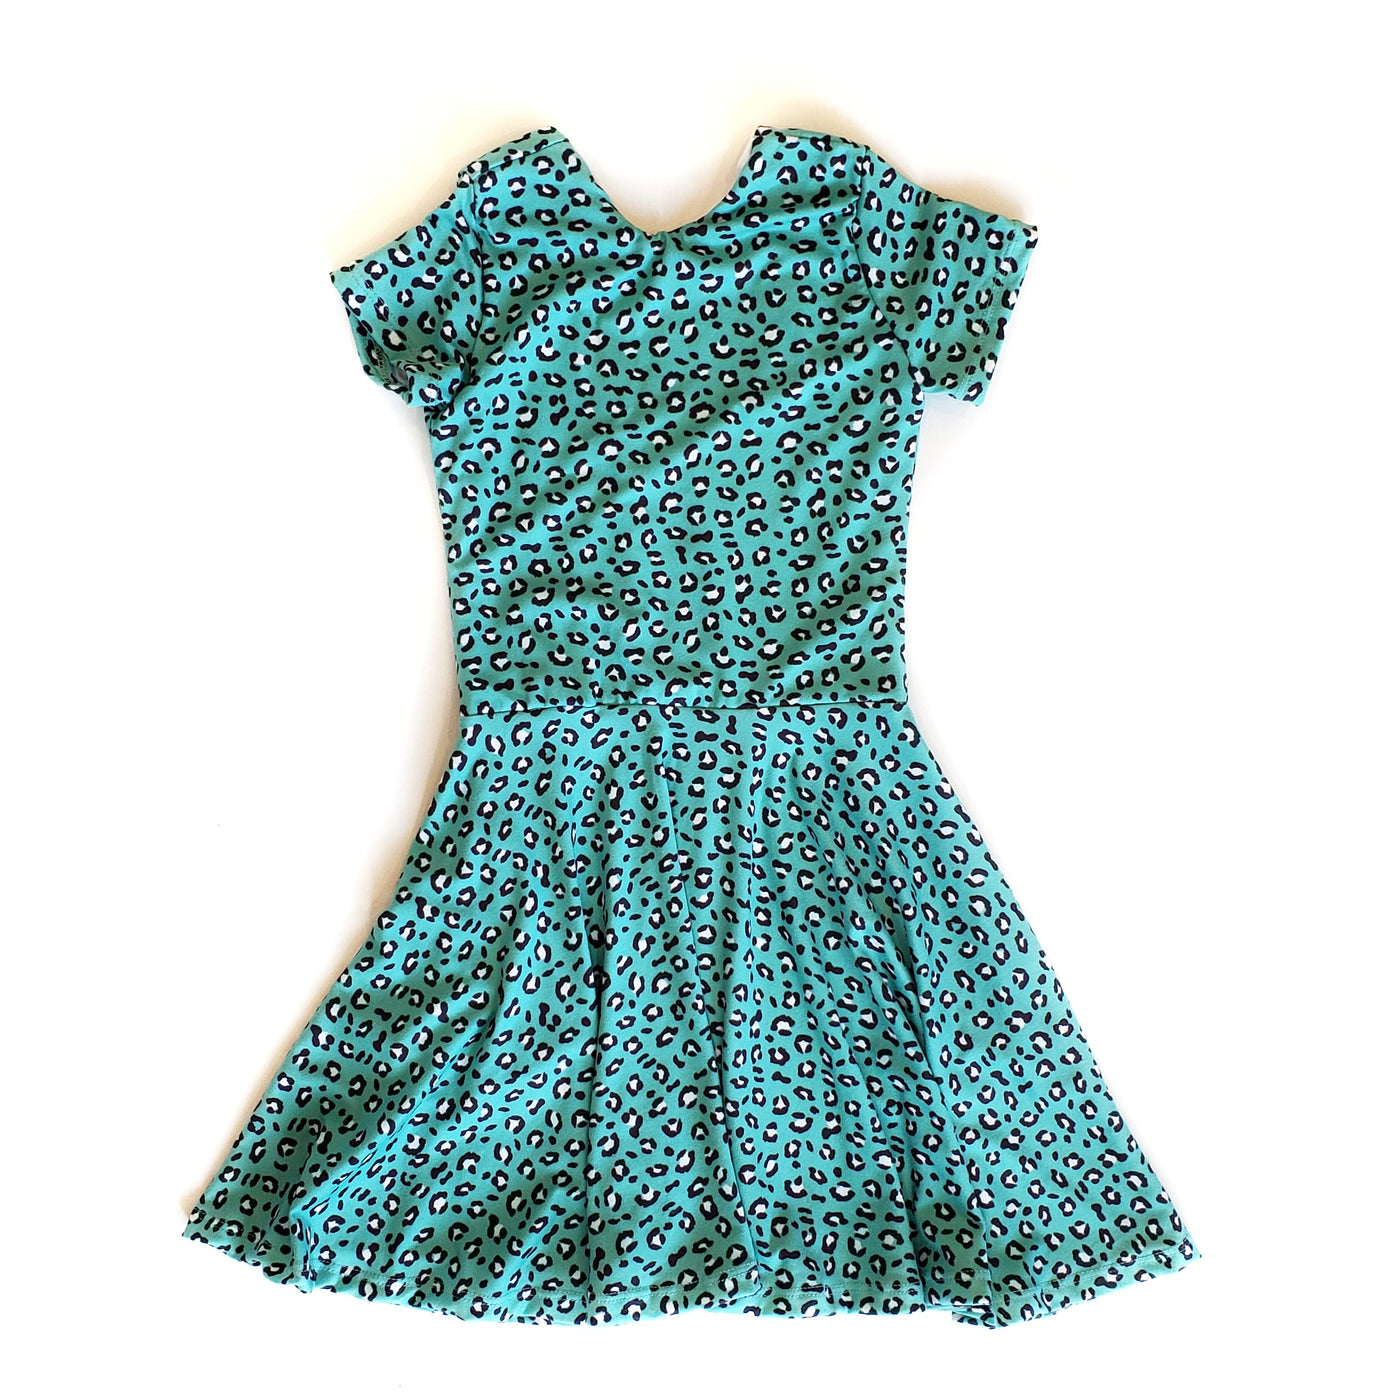 LT Signature Leopard Print Twirl Dress